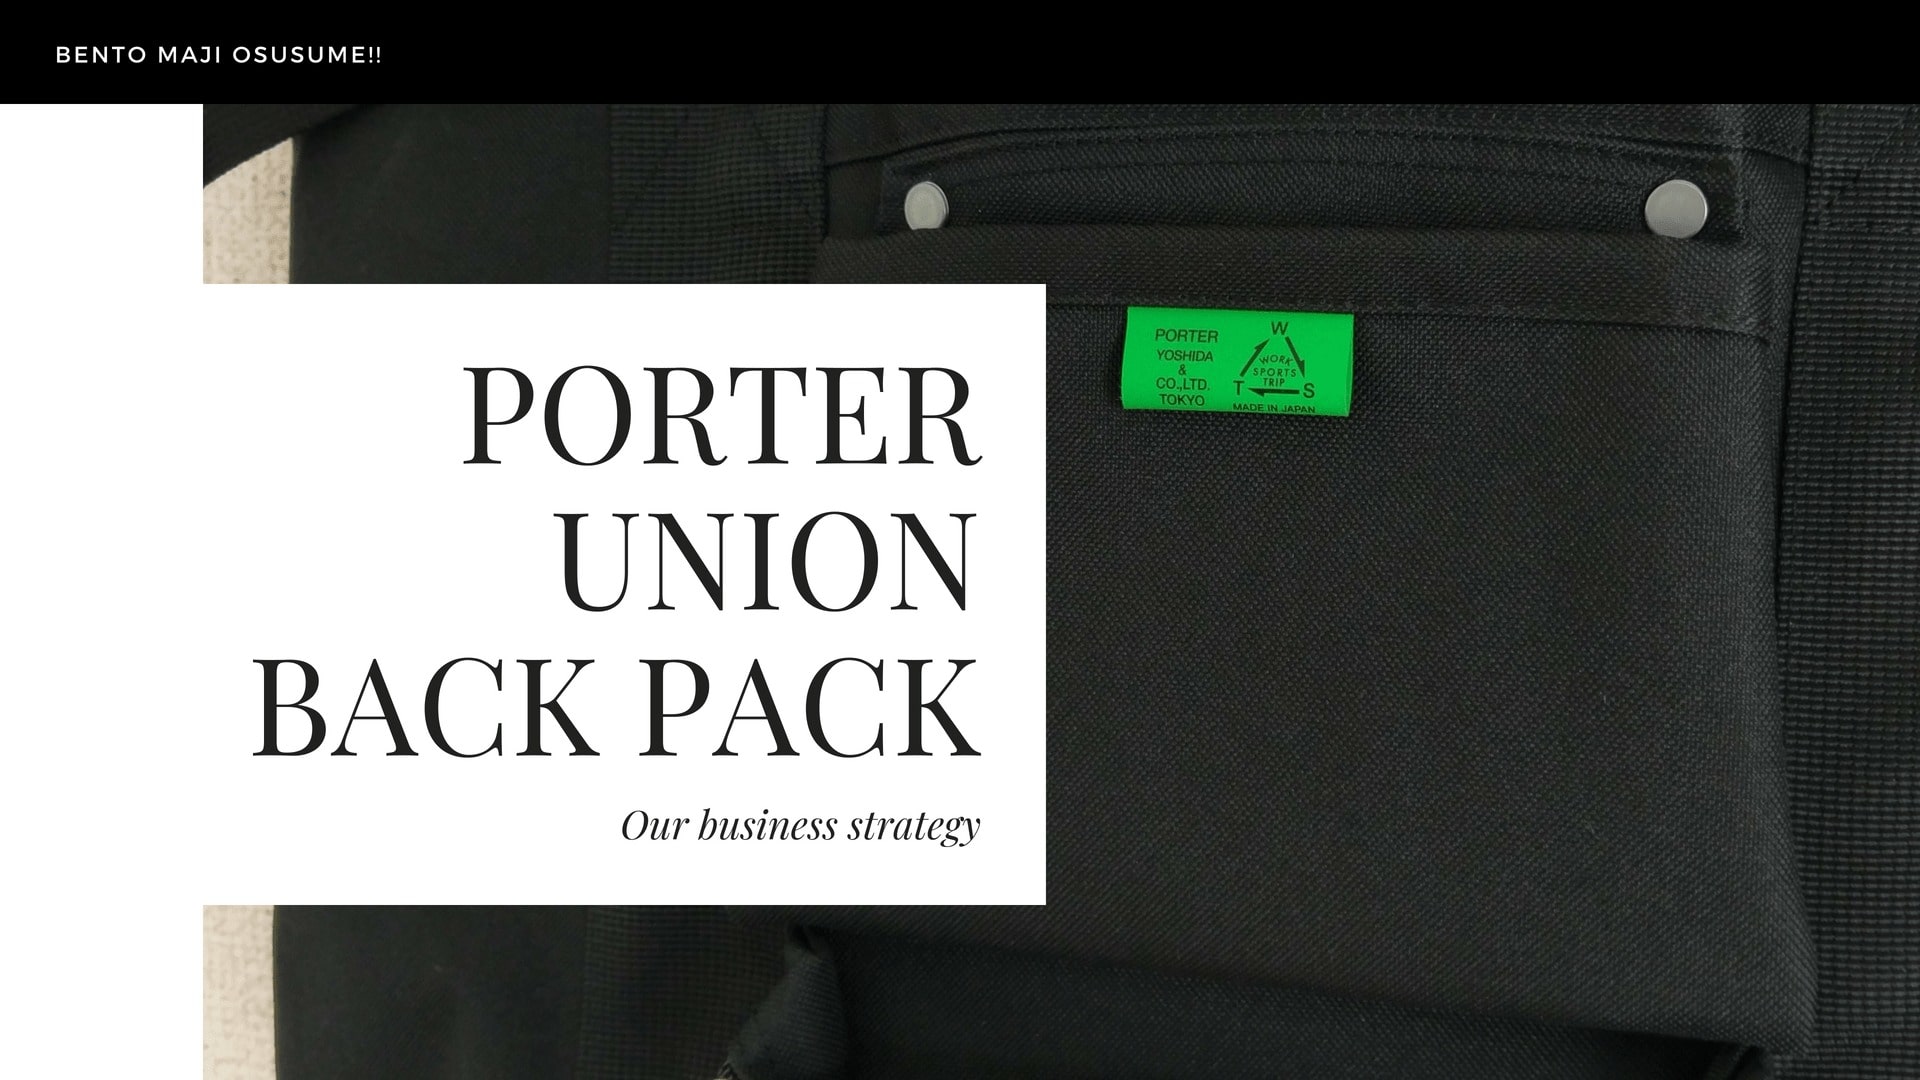 ビジネス利用も可 弁当が入る大容量リュック Porter Union が見た目を崩さず使えておすすめです 人生を華麗に生き抜く外見戦略 Style Hack スタイルハック